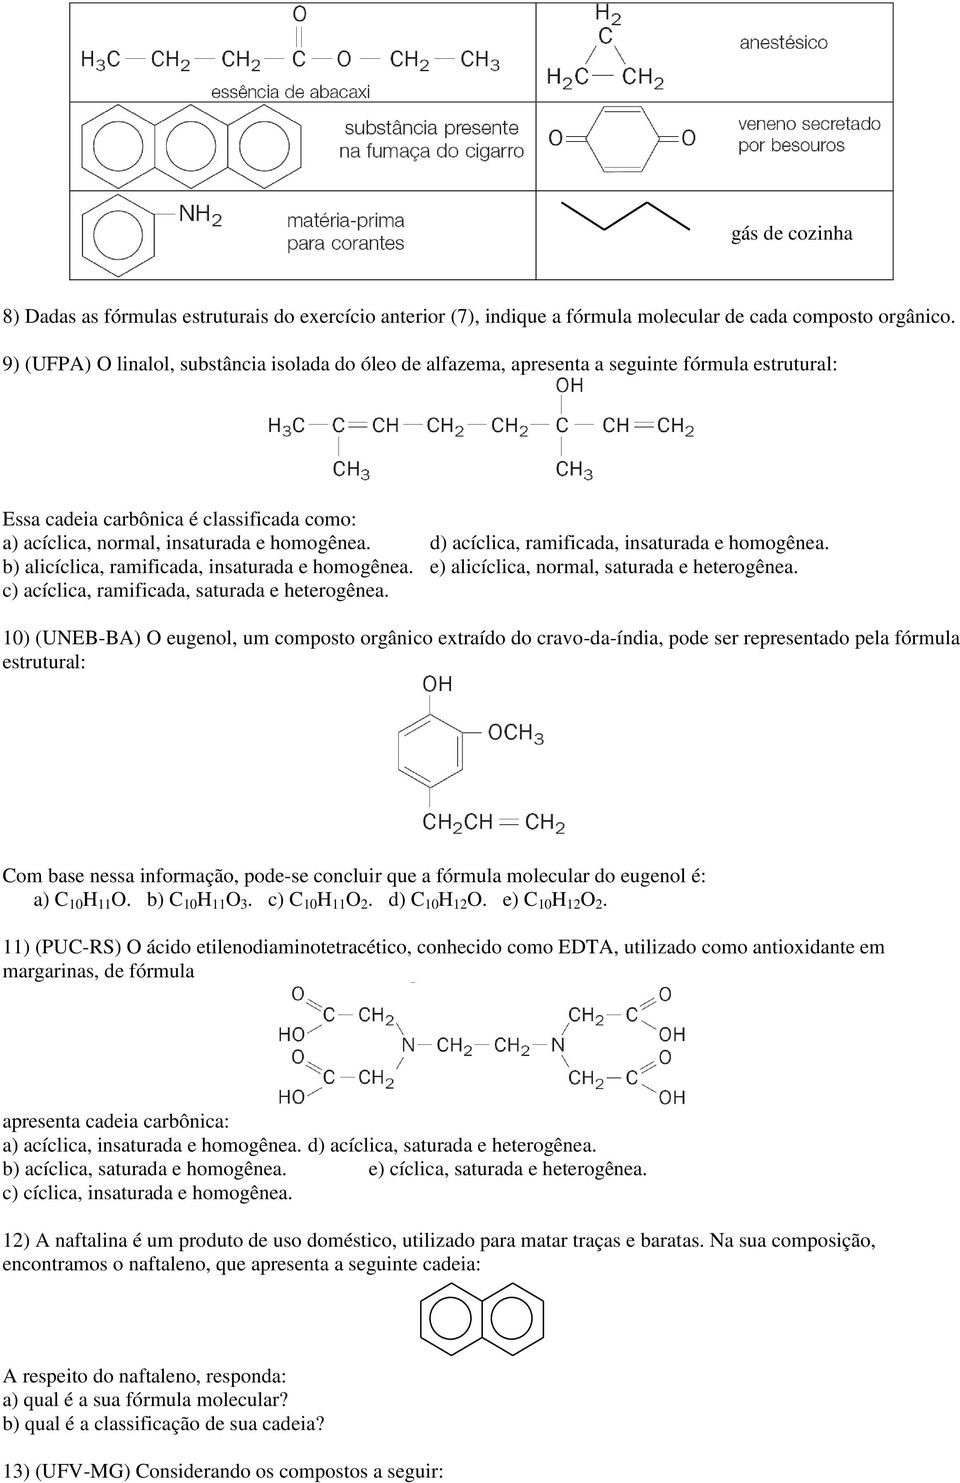 d) acíclica, ramificada, insaturada e homogênea. alicíclica, ramificada, insaturada e homogênea. e) alicíclica, normal, saturada e heterogênea. c) acíclica, ramificada, saturada e heterogênea.